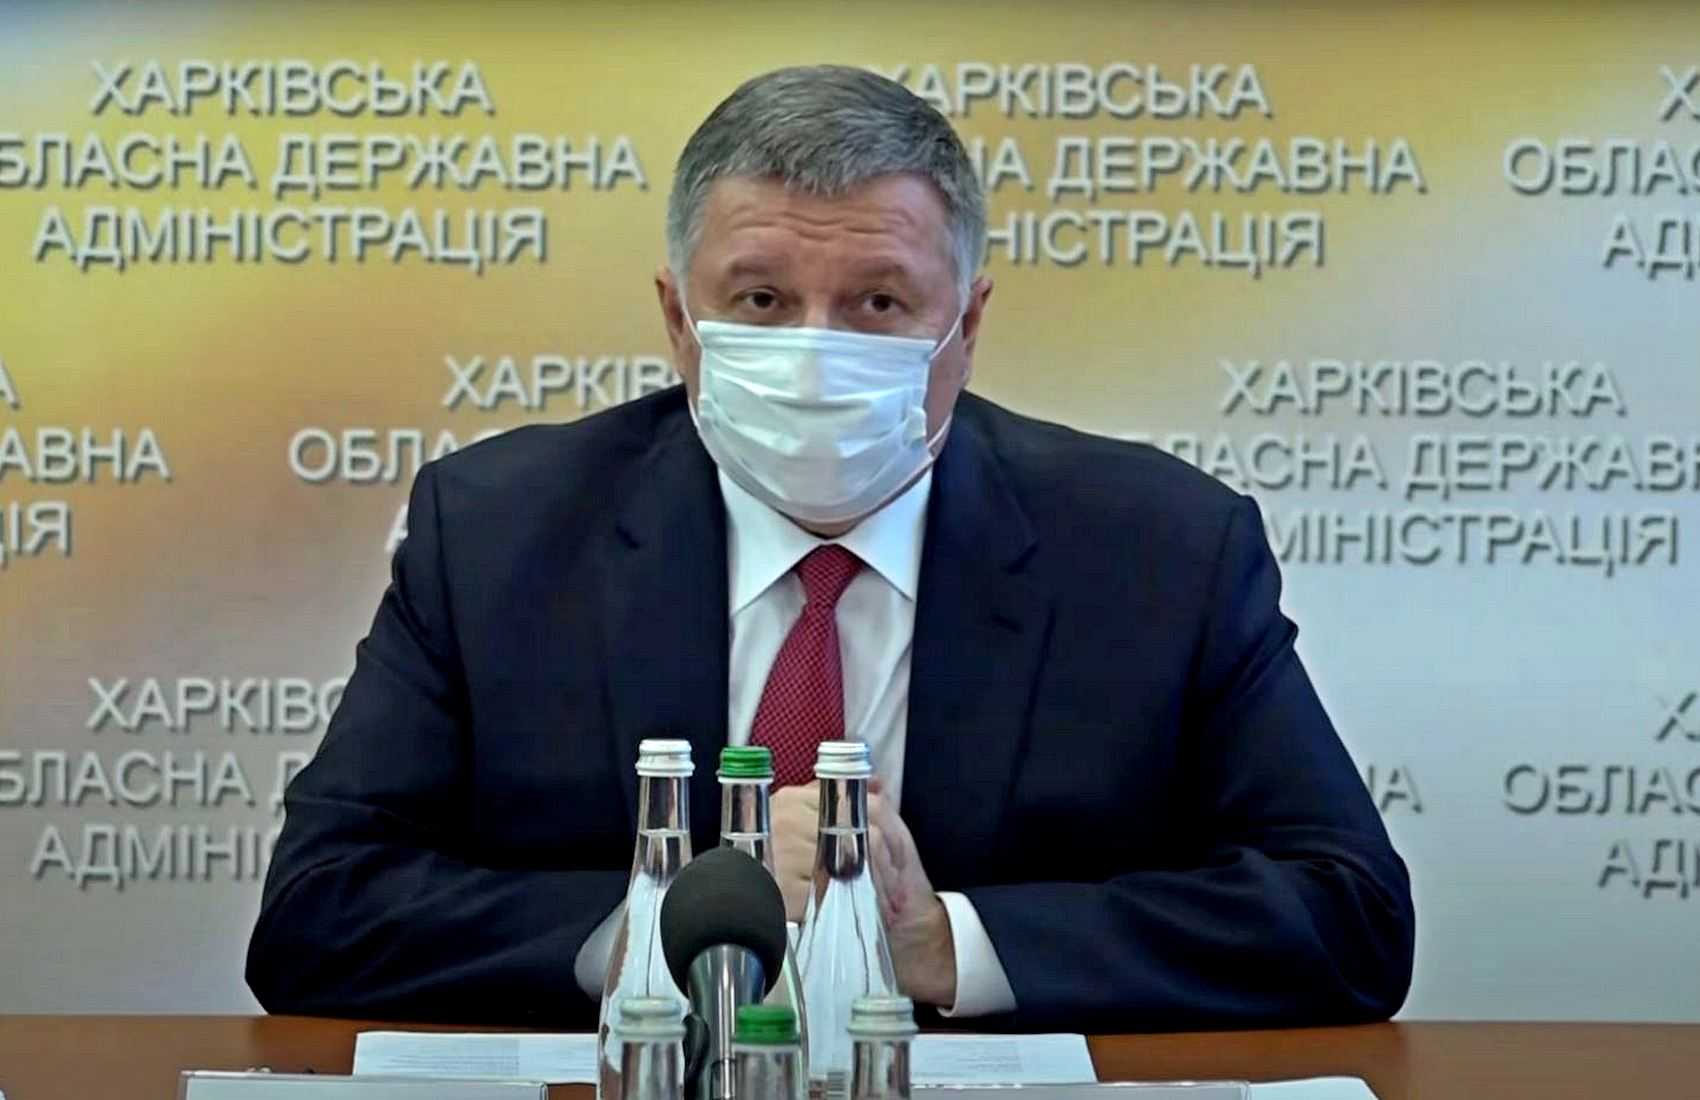 Аваков назвал Харьков «ментовским городом» и пообещал лично контролировать власть в городе